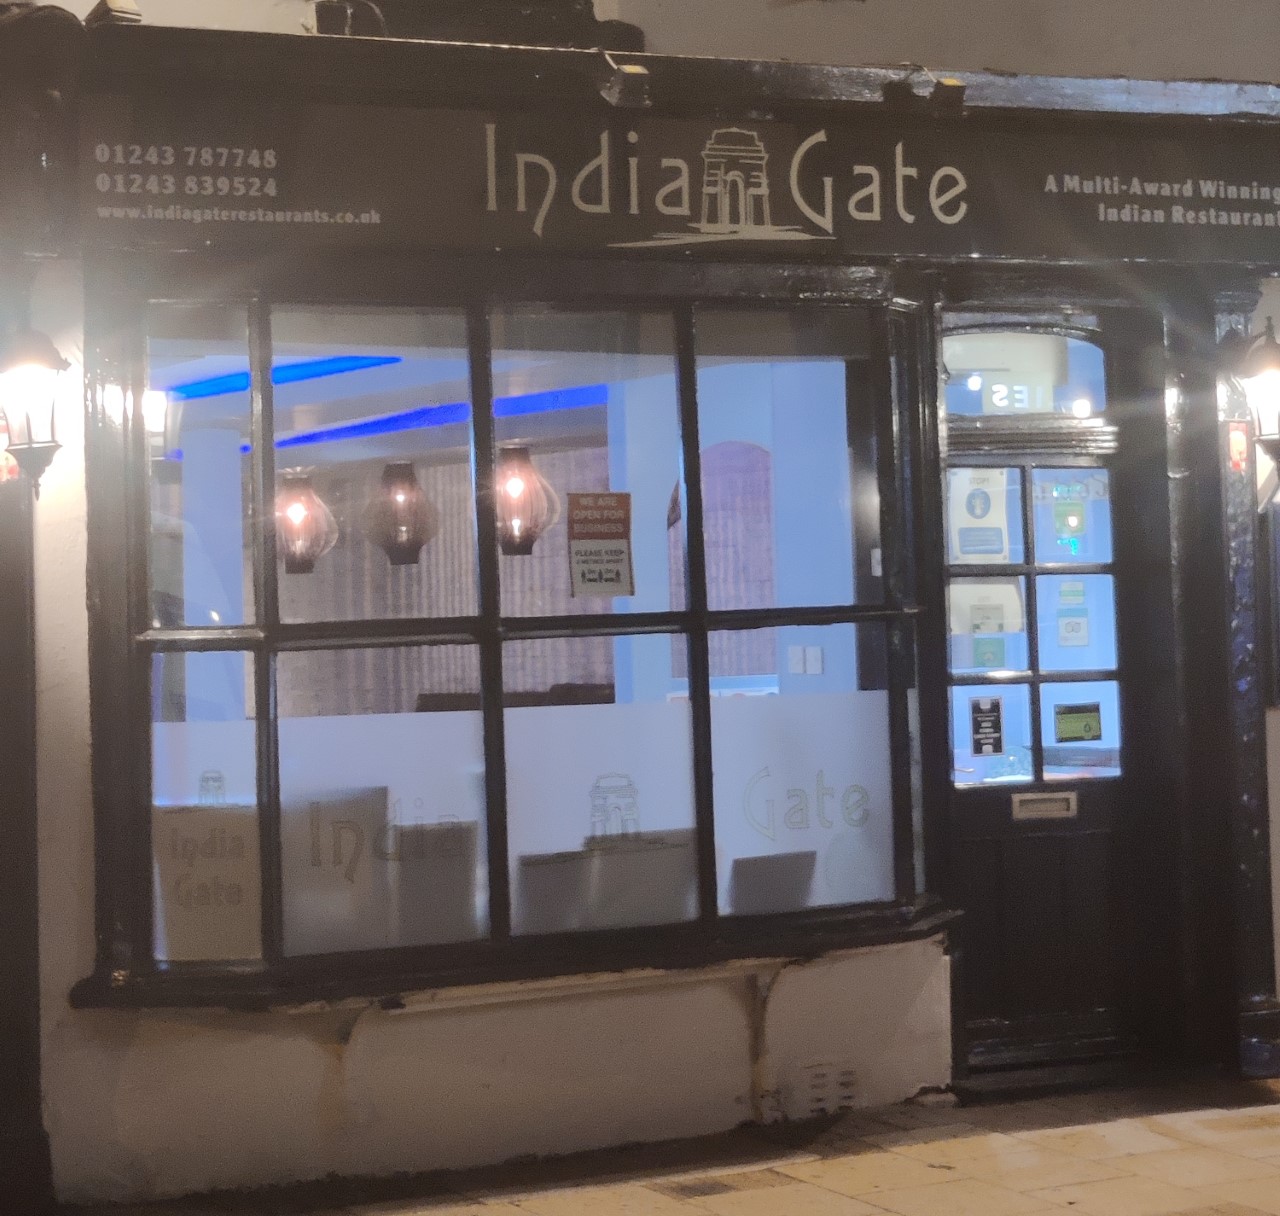 Indian gate restaurant